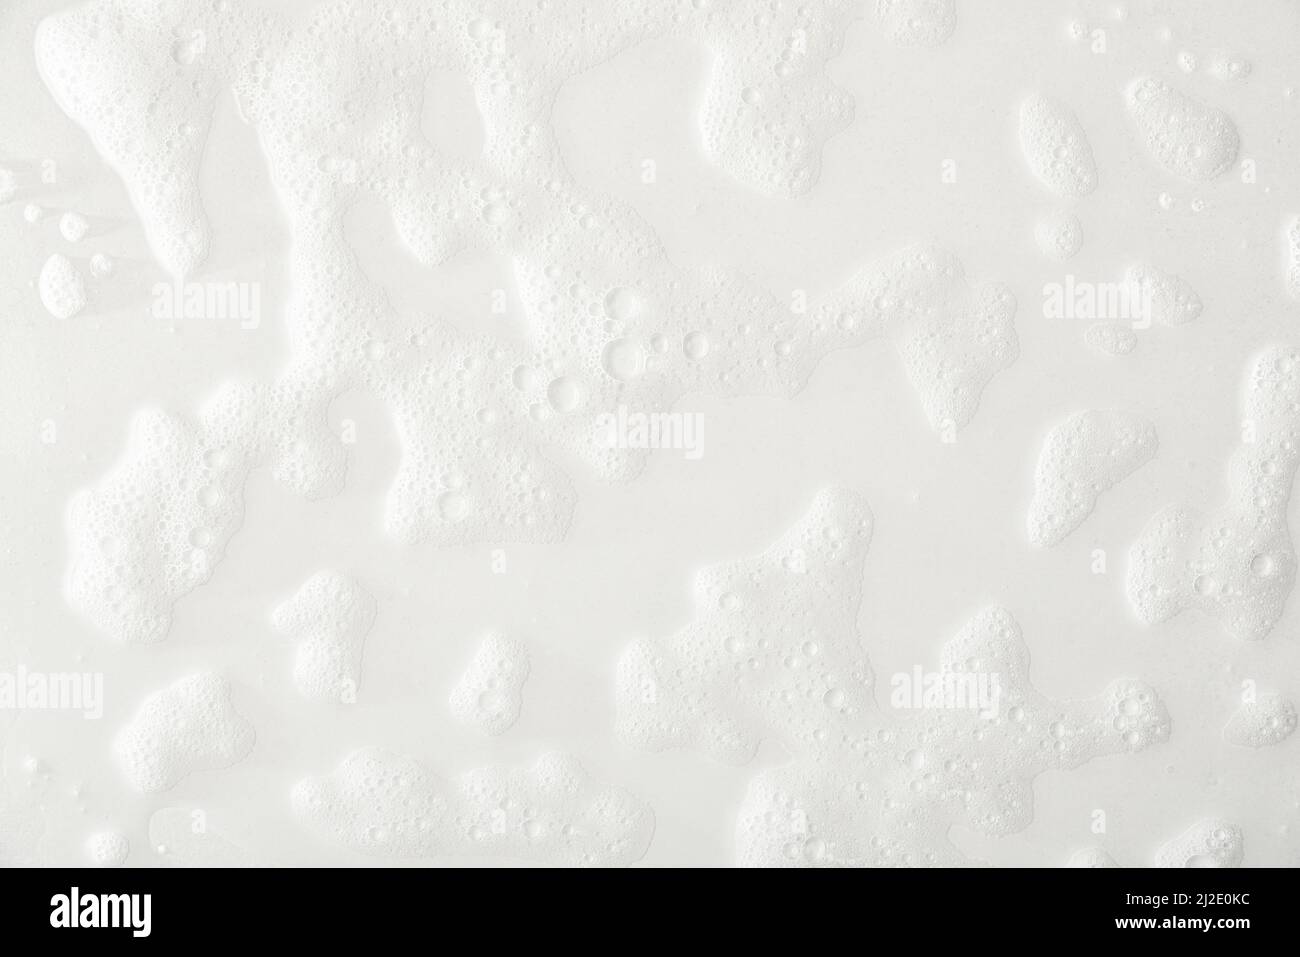 Schaumstoff auf weißem Grund mit Spuren von Seife und Duschwasser. Draufsicht. Horizontale Zusammensetzung. Stockfoto